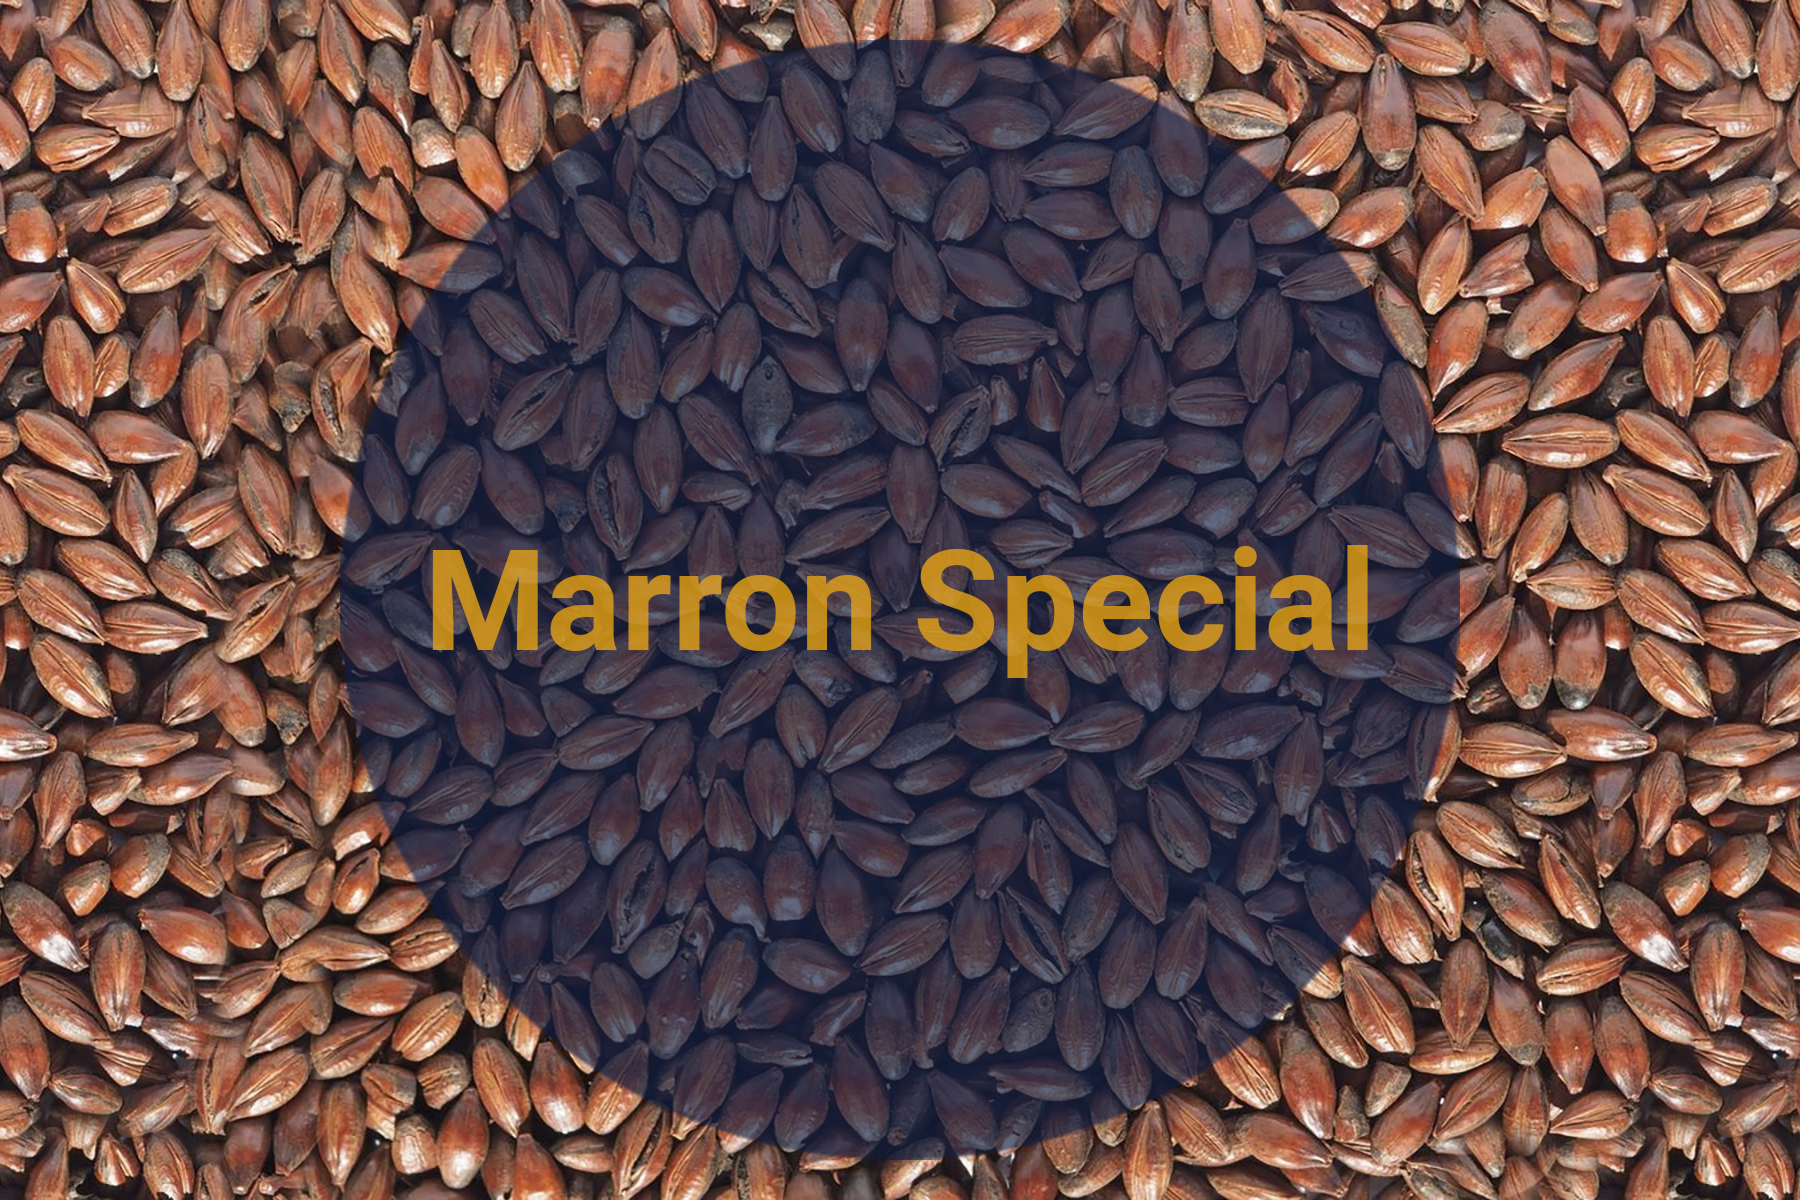 Солод Каштановый Специальный / Marron Special, 270-320 EBC (Soufflet), 1 кг